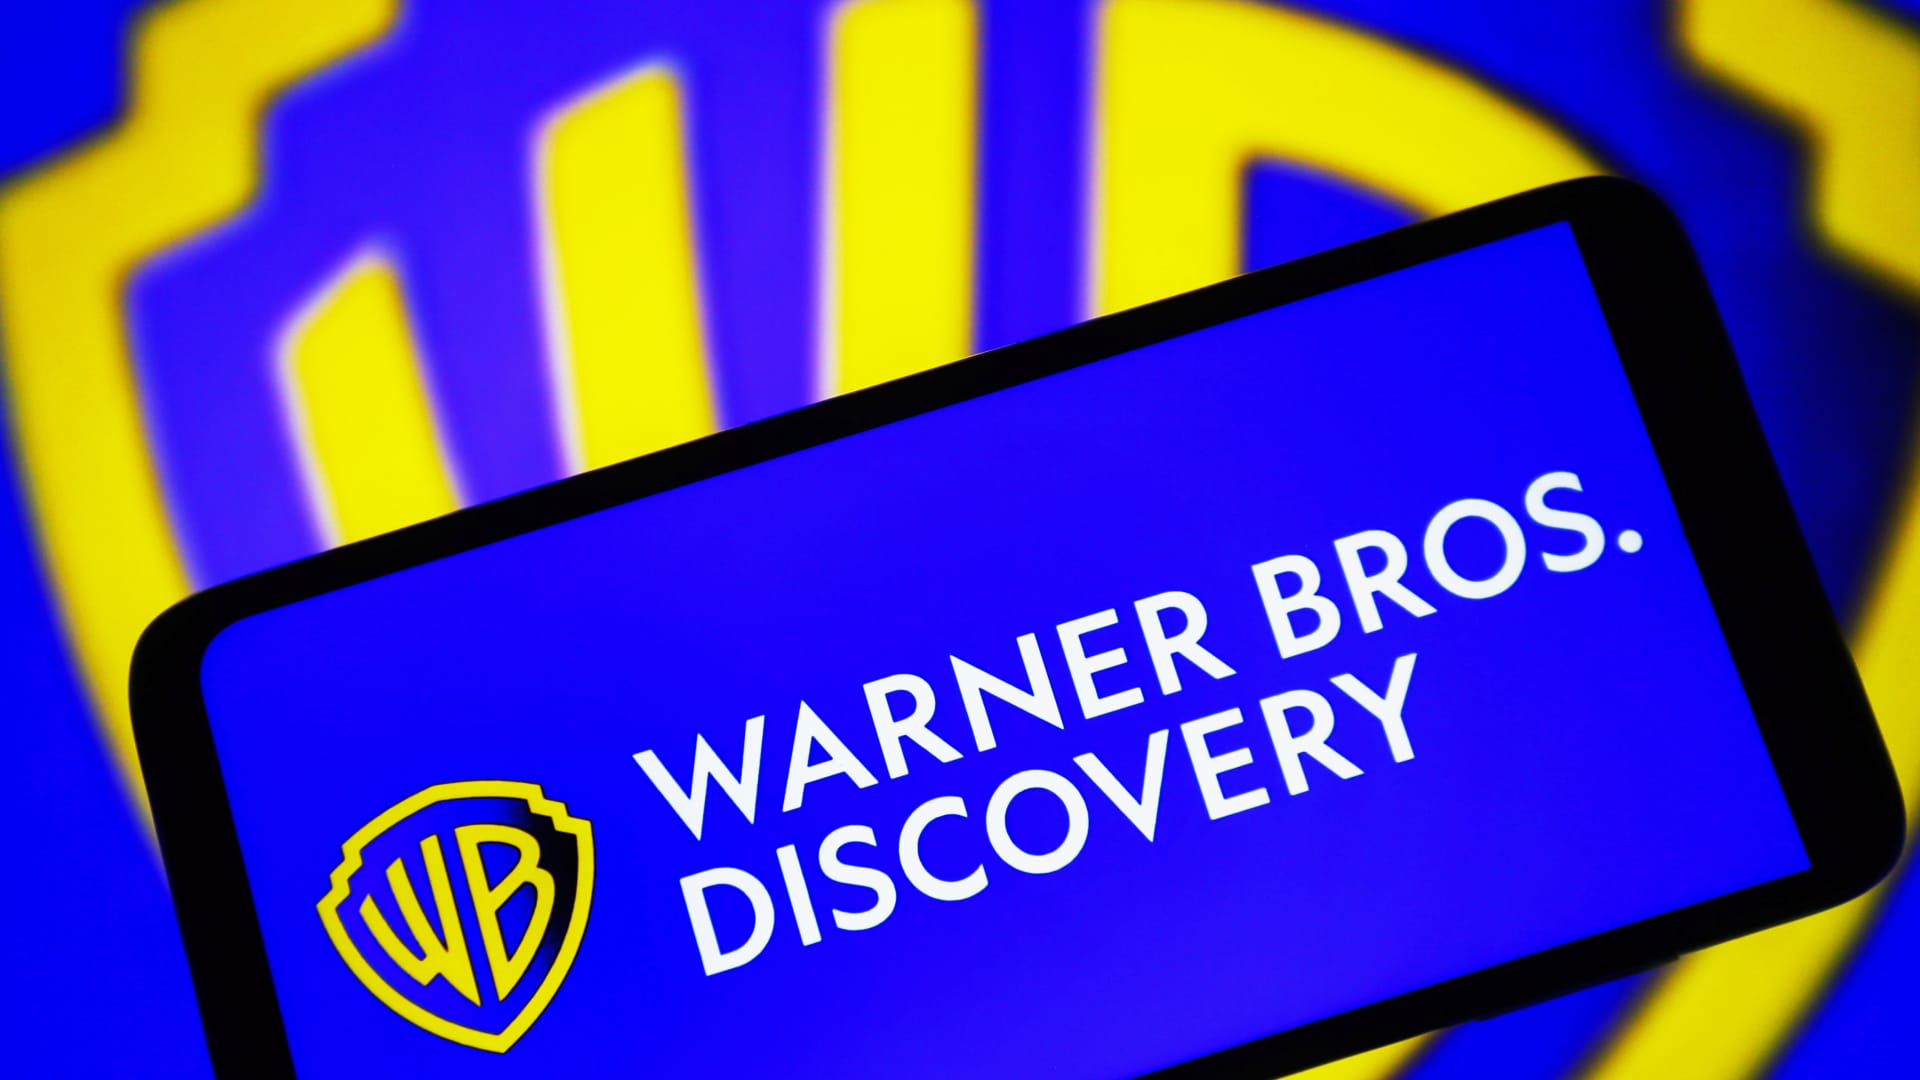 Photo of Warner Bros Discovery (WBD) Ergebnisbericht Q1 2013